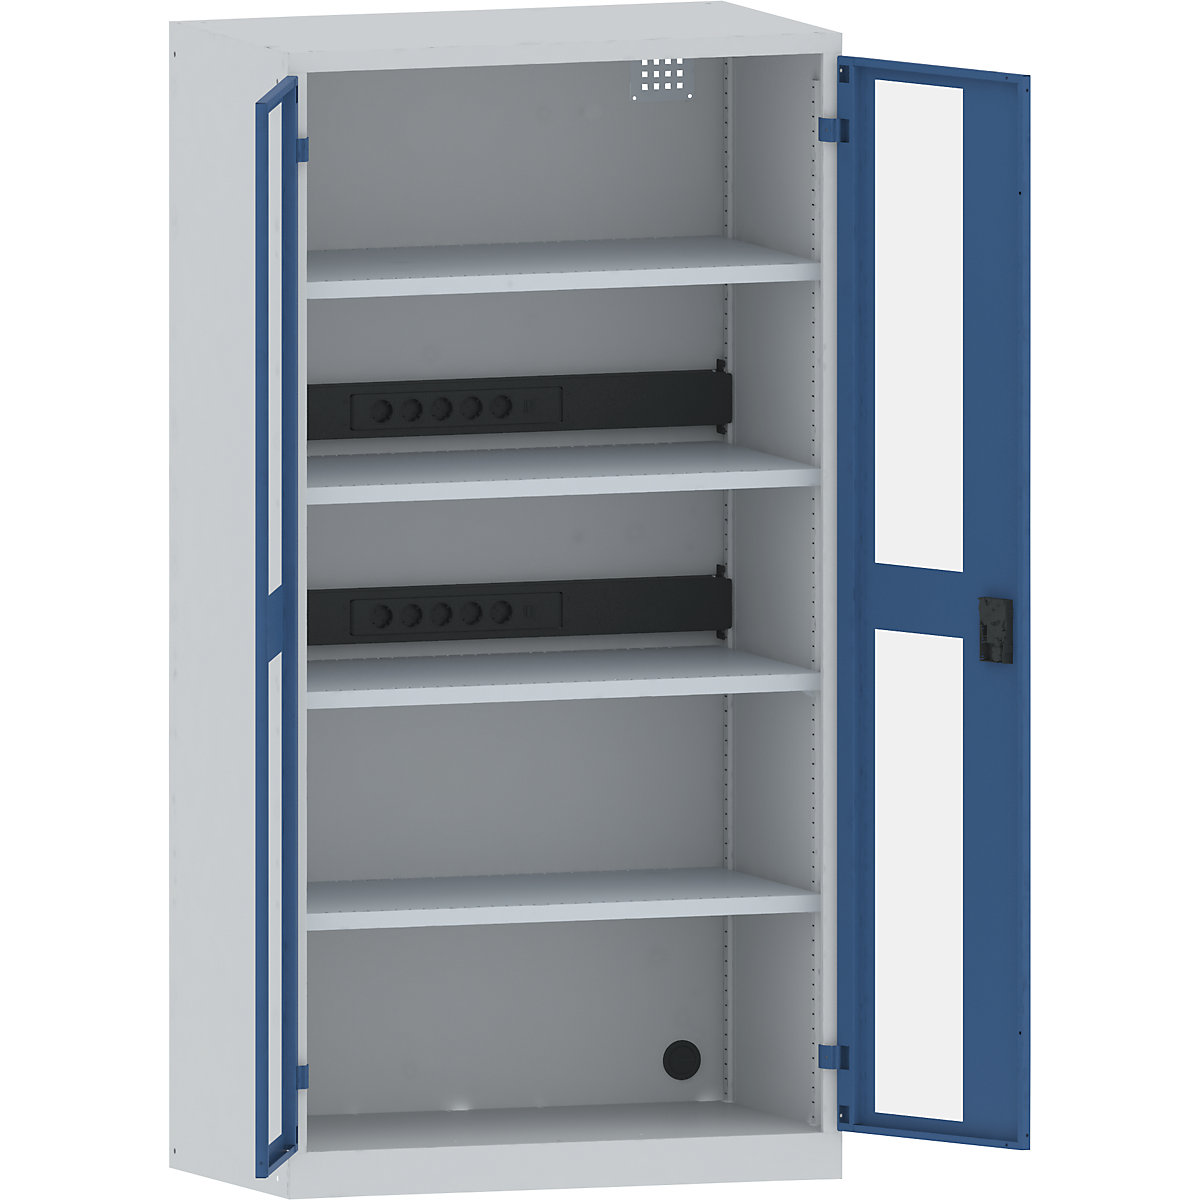 Accuoplaadkast met stroomvoorziening – LISTA, 4 legborden, deuren met zichtvenster, 2 contactdooslijsten op de achterkant, grijs/blauw-19